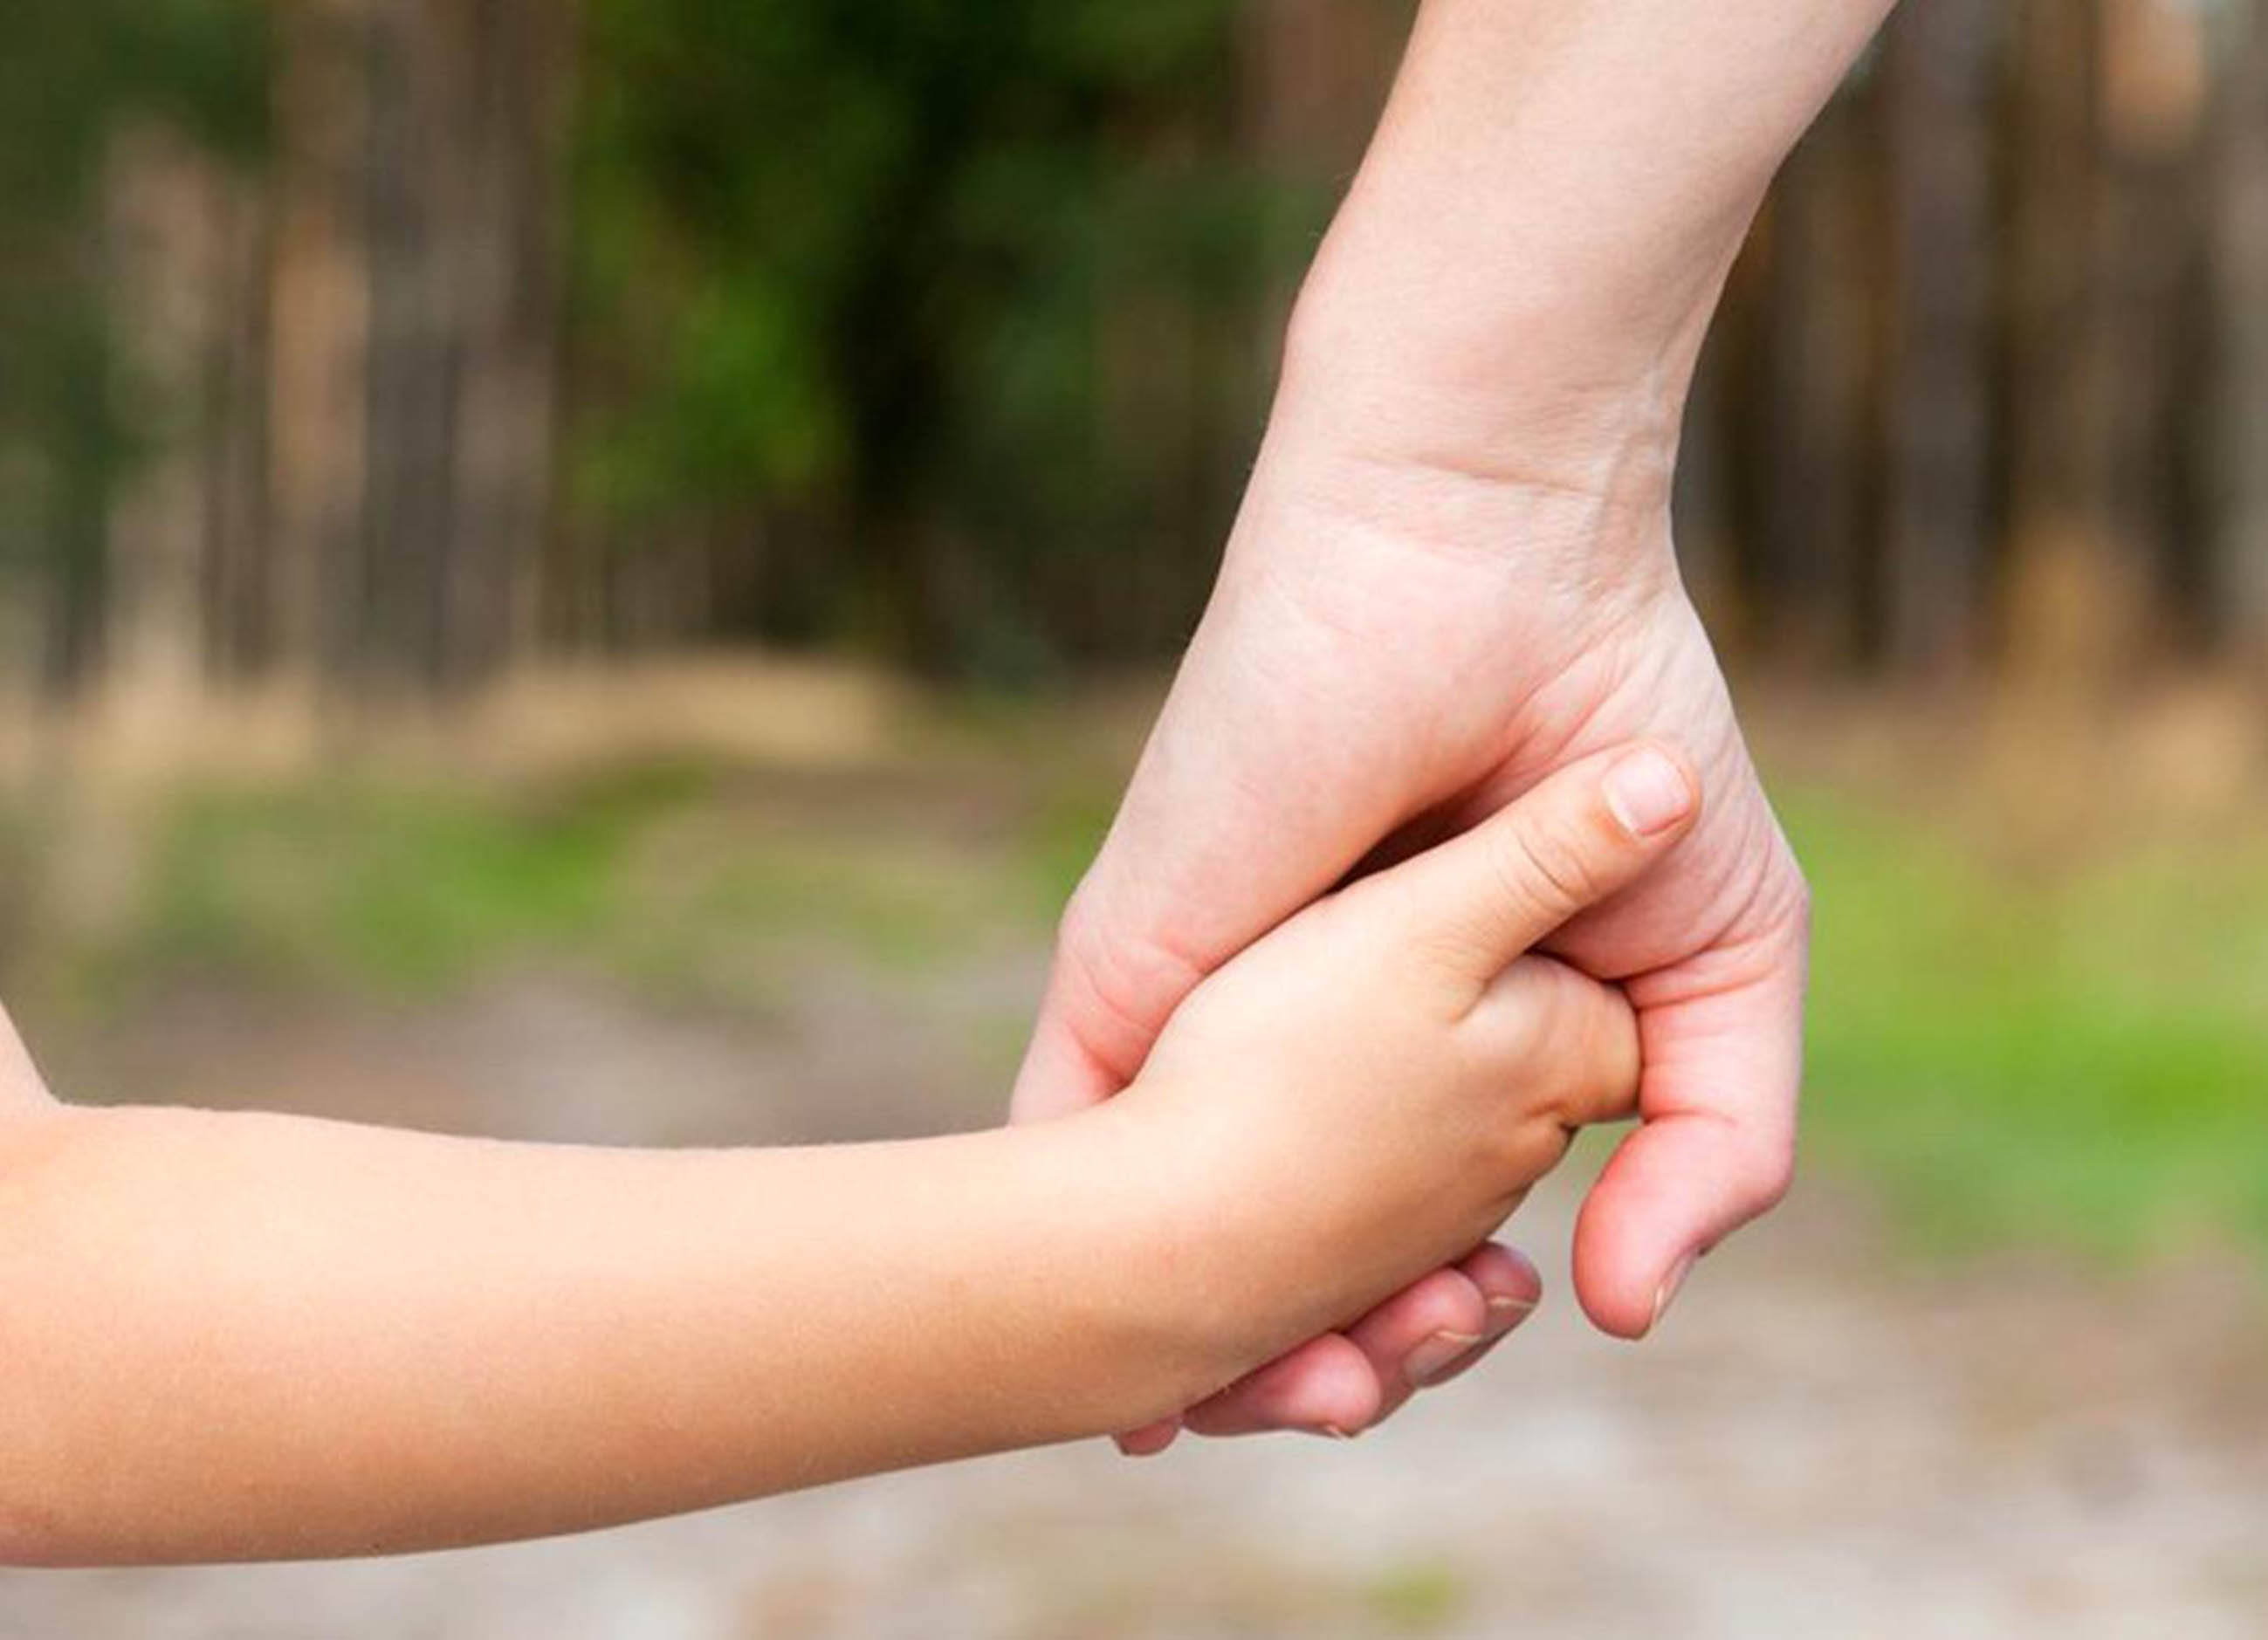 Ser padre responsable implica acompañar a los hijos e interactuar con ellos: Especialistas